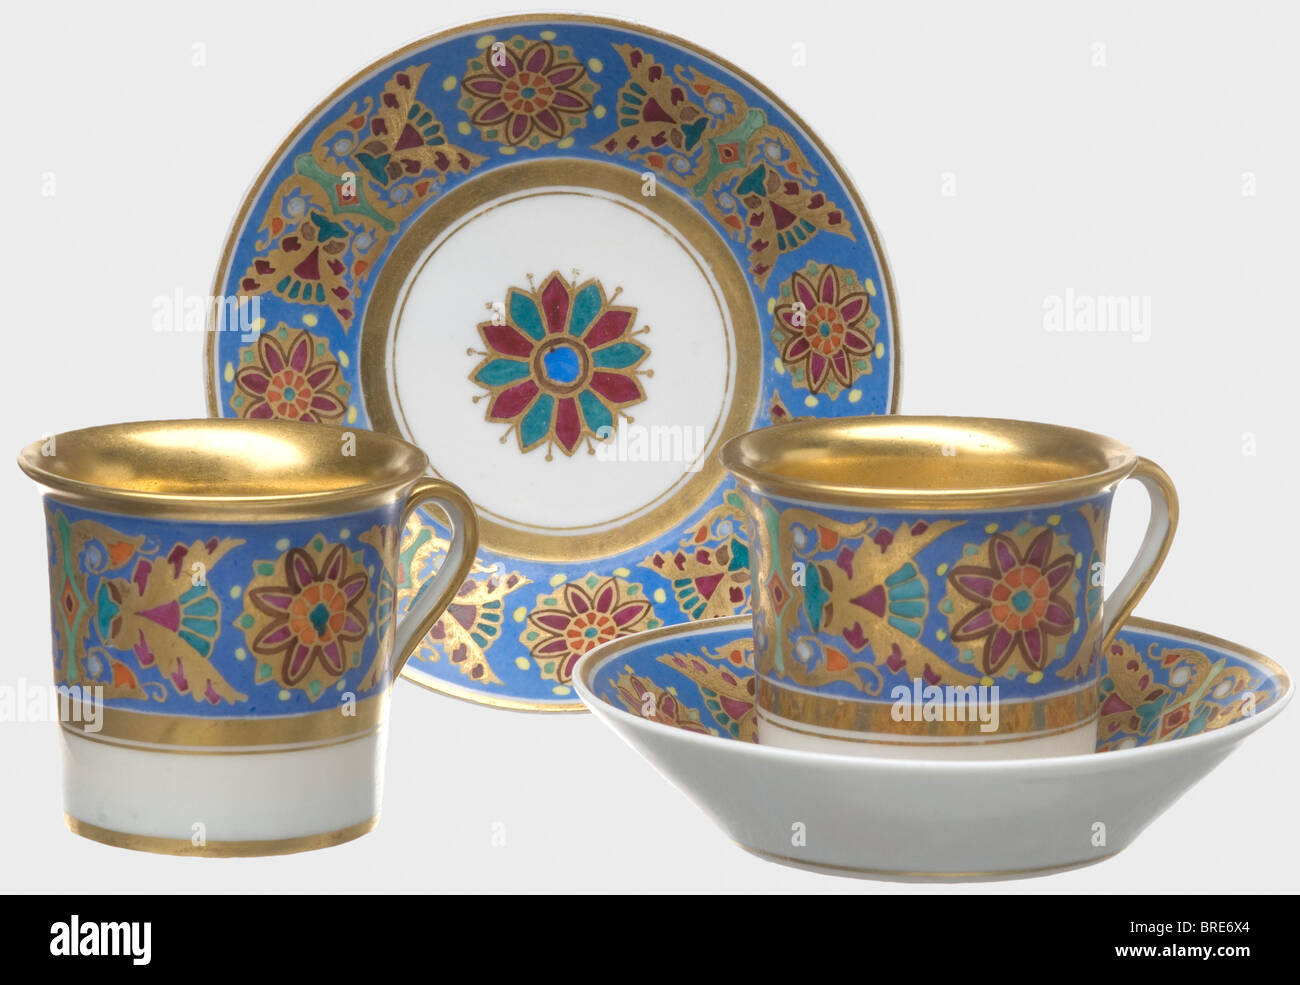 Le service de table gothique, deux tasses avec soucoupes du règne de la  manufacture de porcelaine russe impériale Tsar Alexander II  Saint-Pétersbourg. Porcelaine blanche et vernie avec bordure en or et  décorations